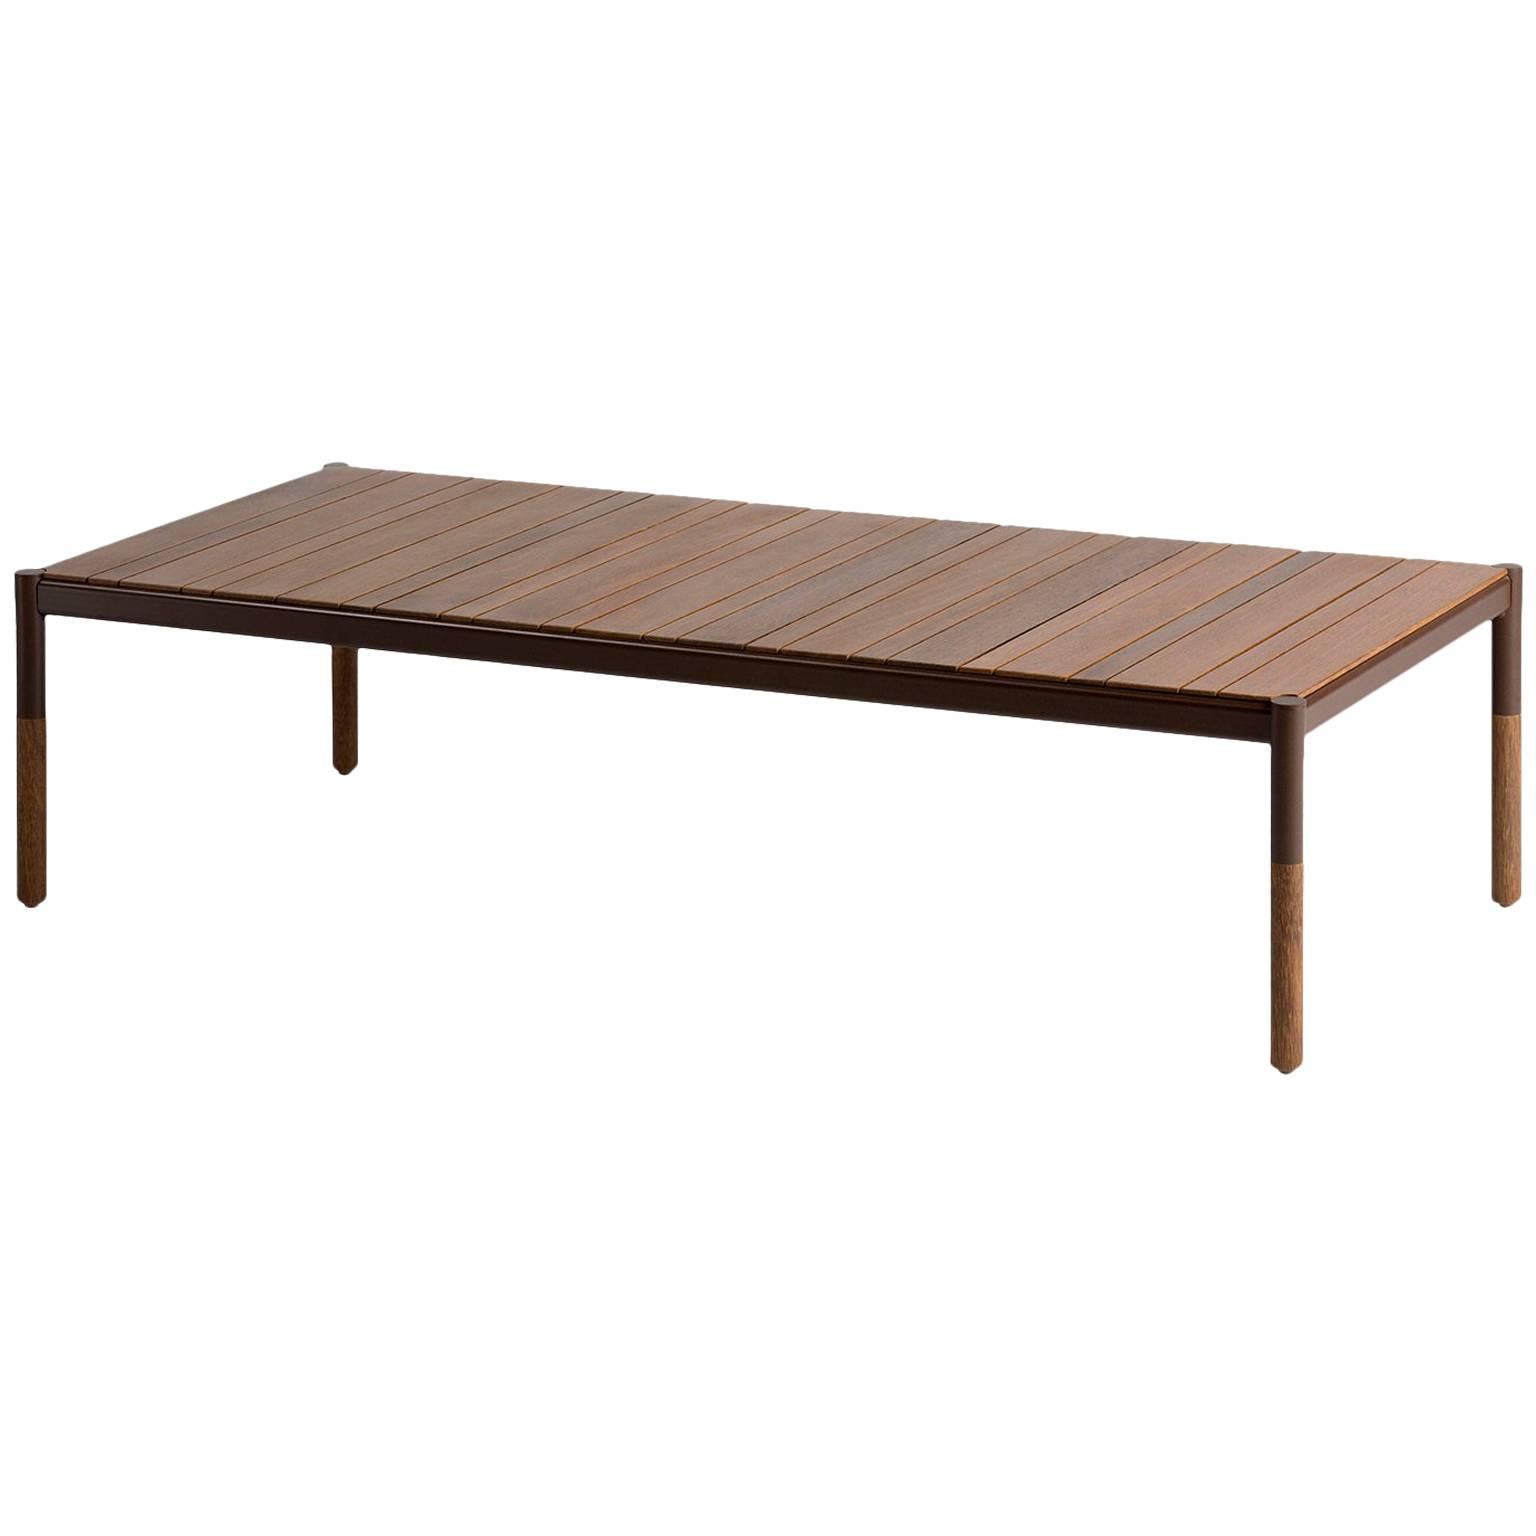 Tisch aus Hartholz und Metall für den Außenbereich, minimalistisches Design